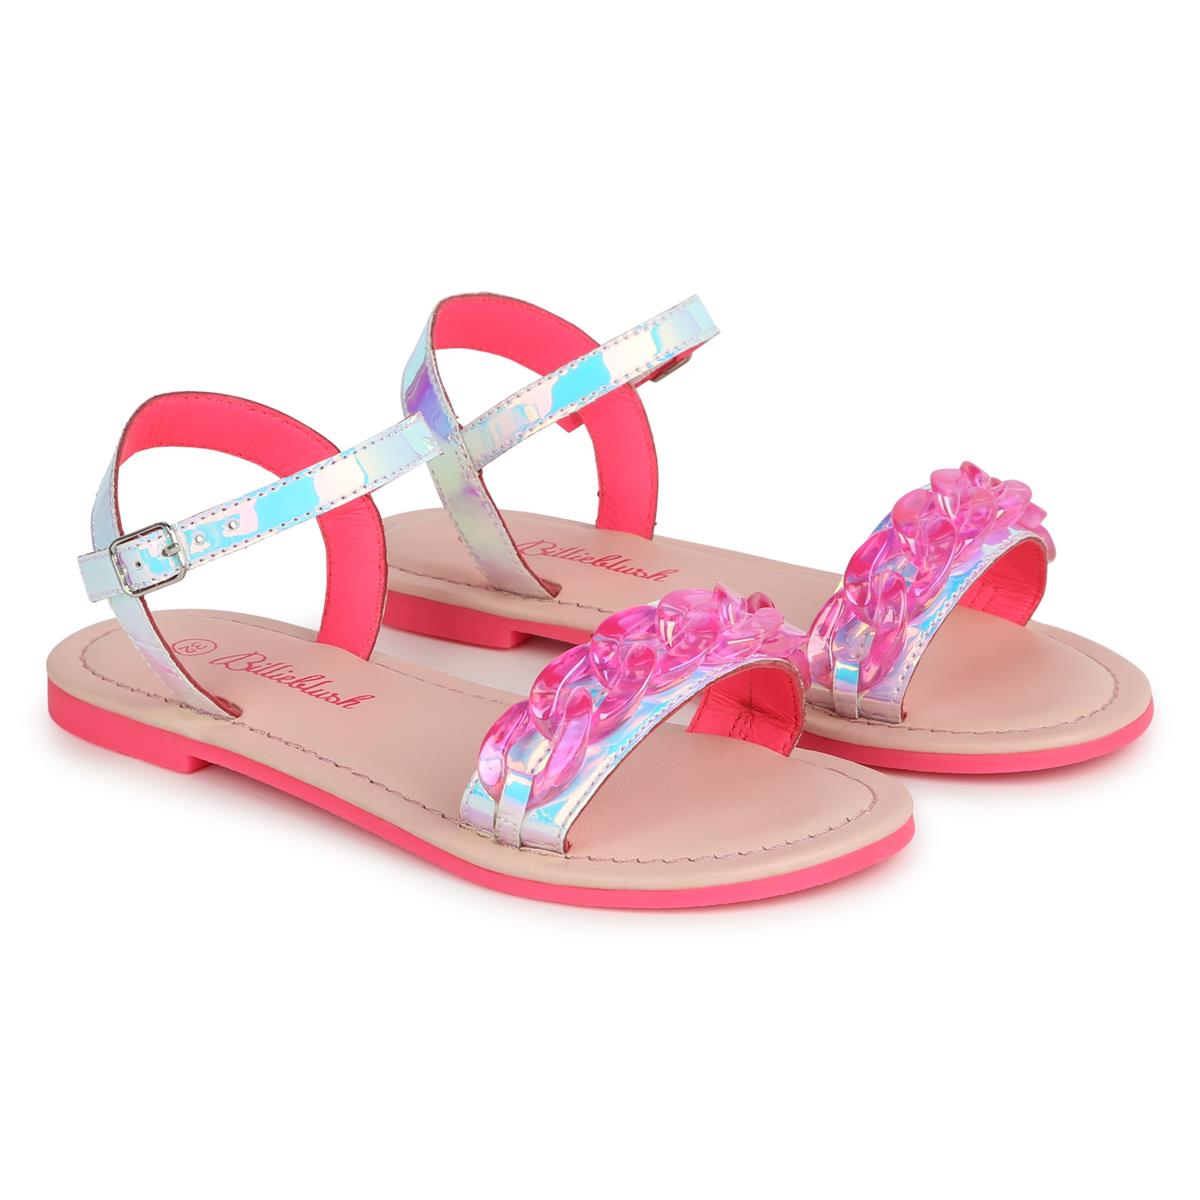 Girls Pink Sandals